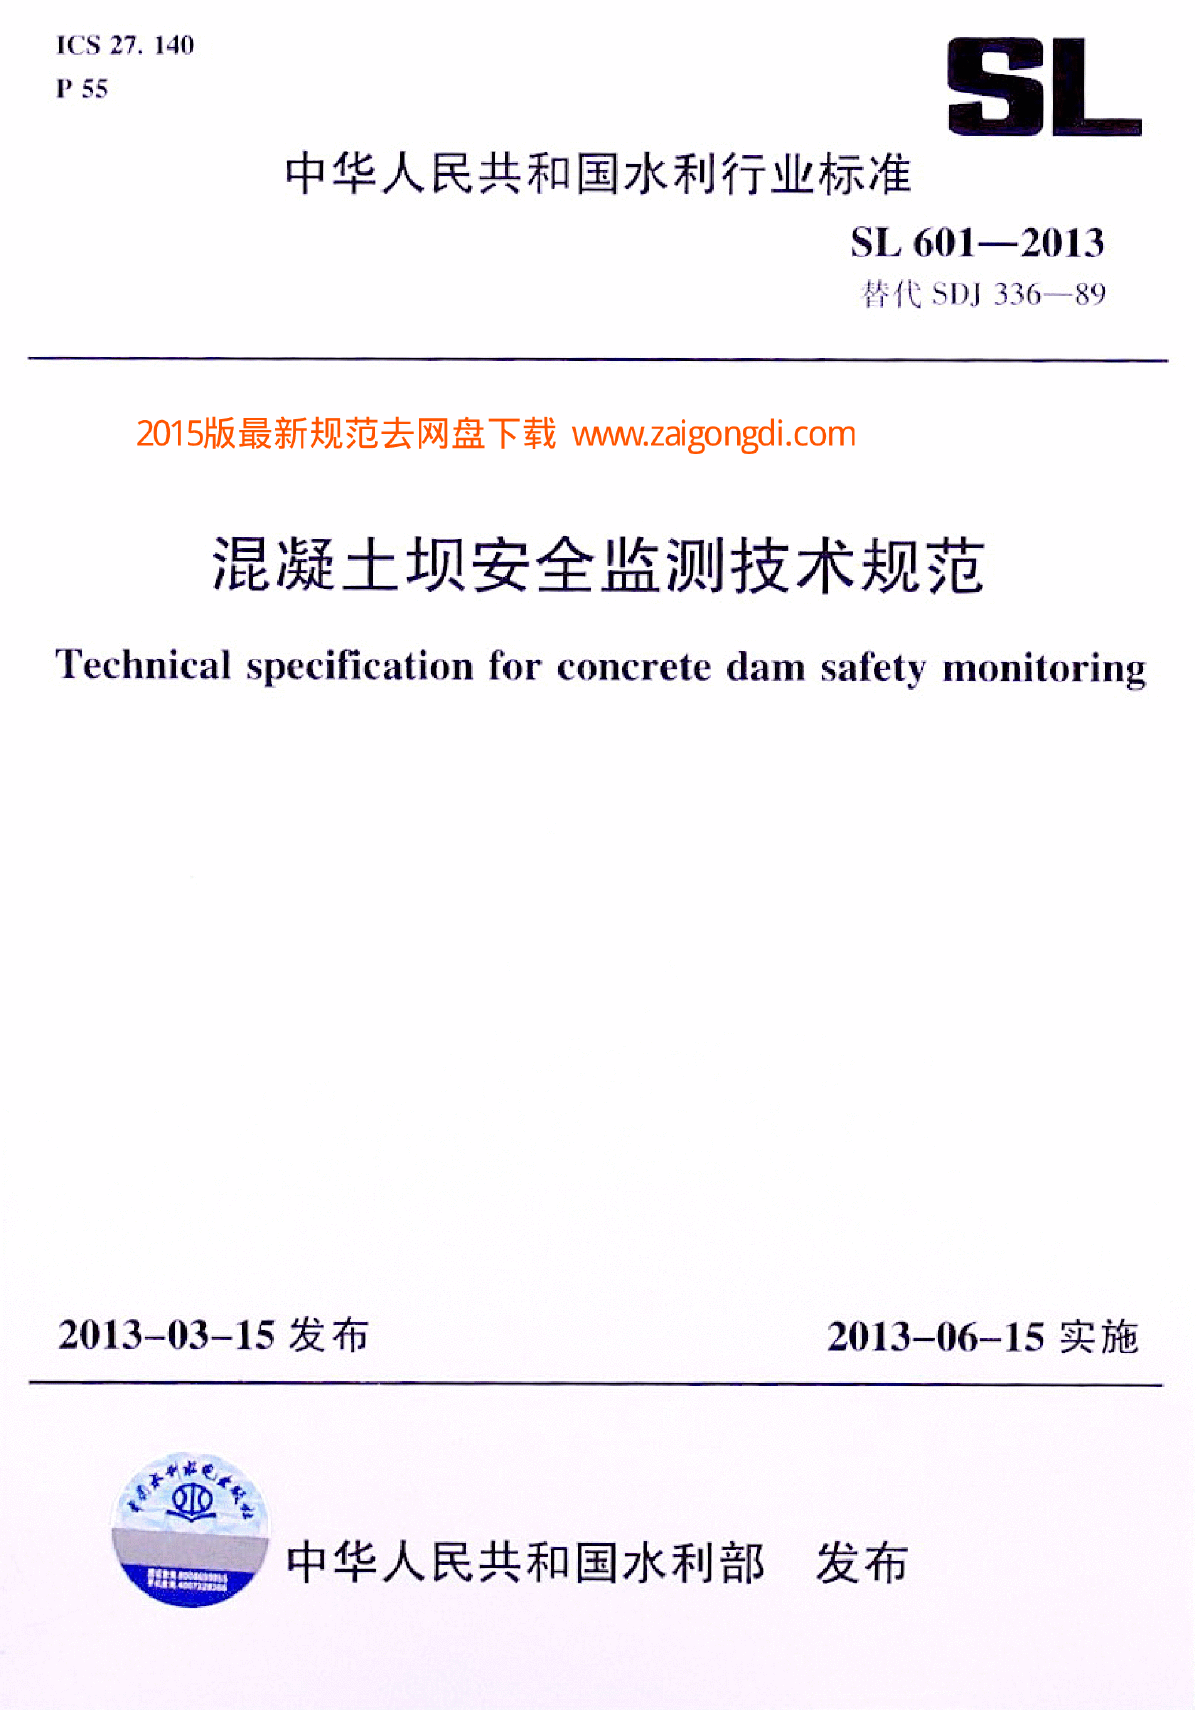 SL601-2013混凝土坝安全监测技术规范